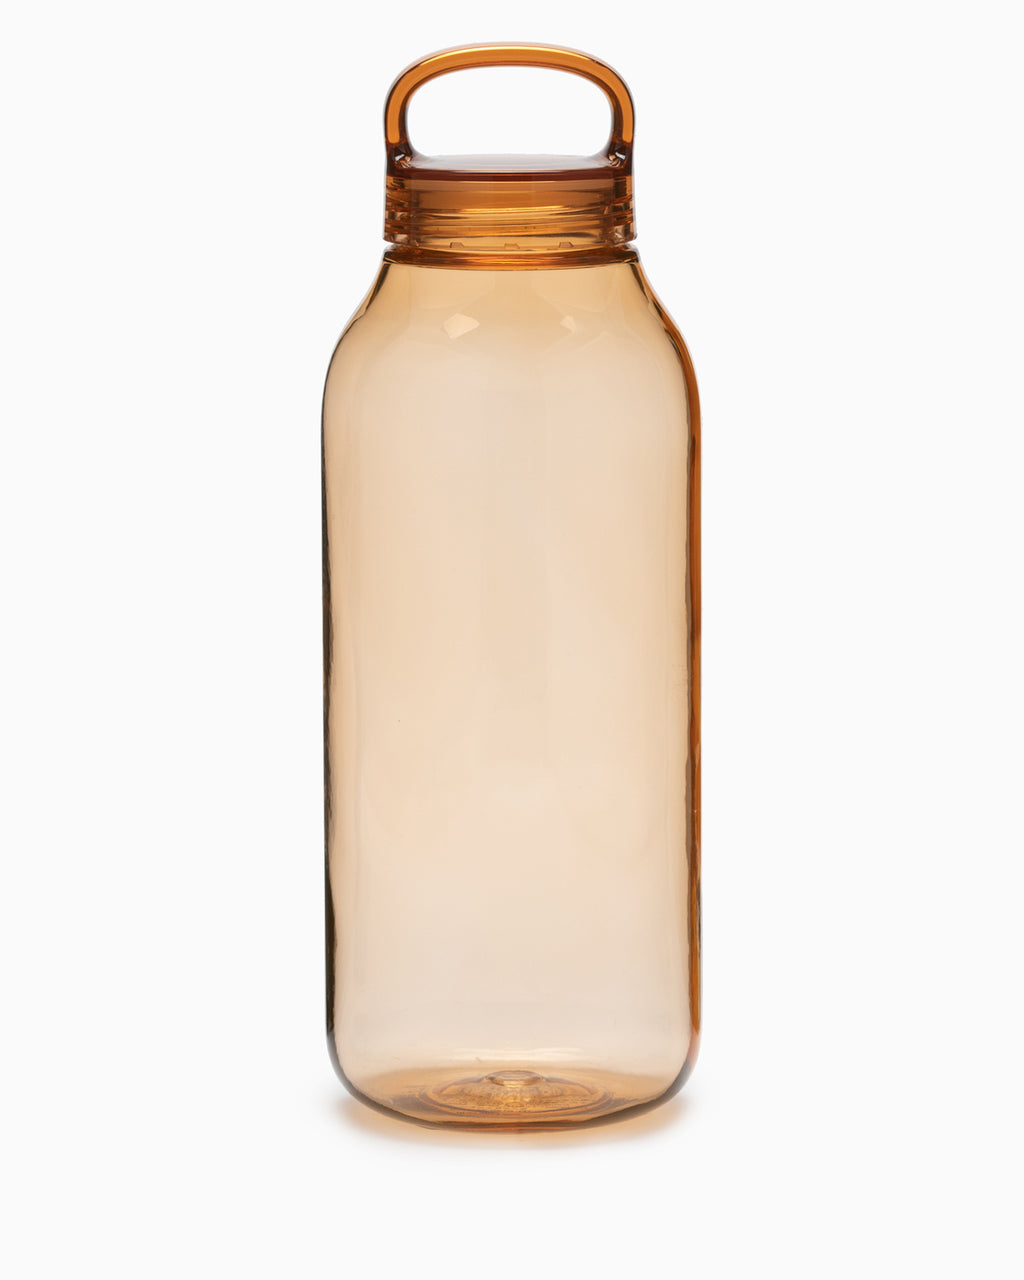 https://www.oldfaithfulshop.com/cdn/shop/products/Kinto-Water-Bottle-950ml-Amber-1.jpg?v=1679010688&width=1024